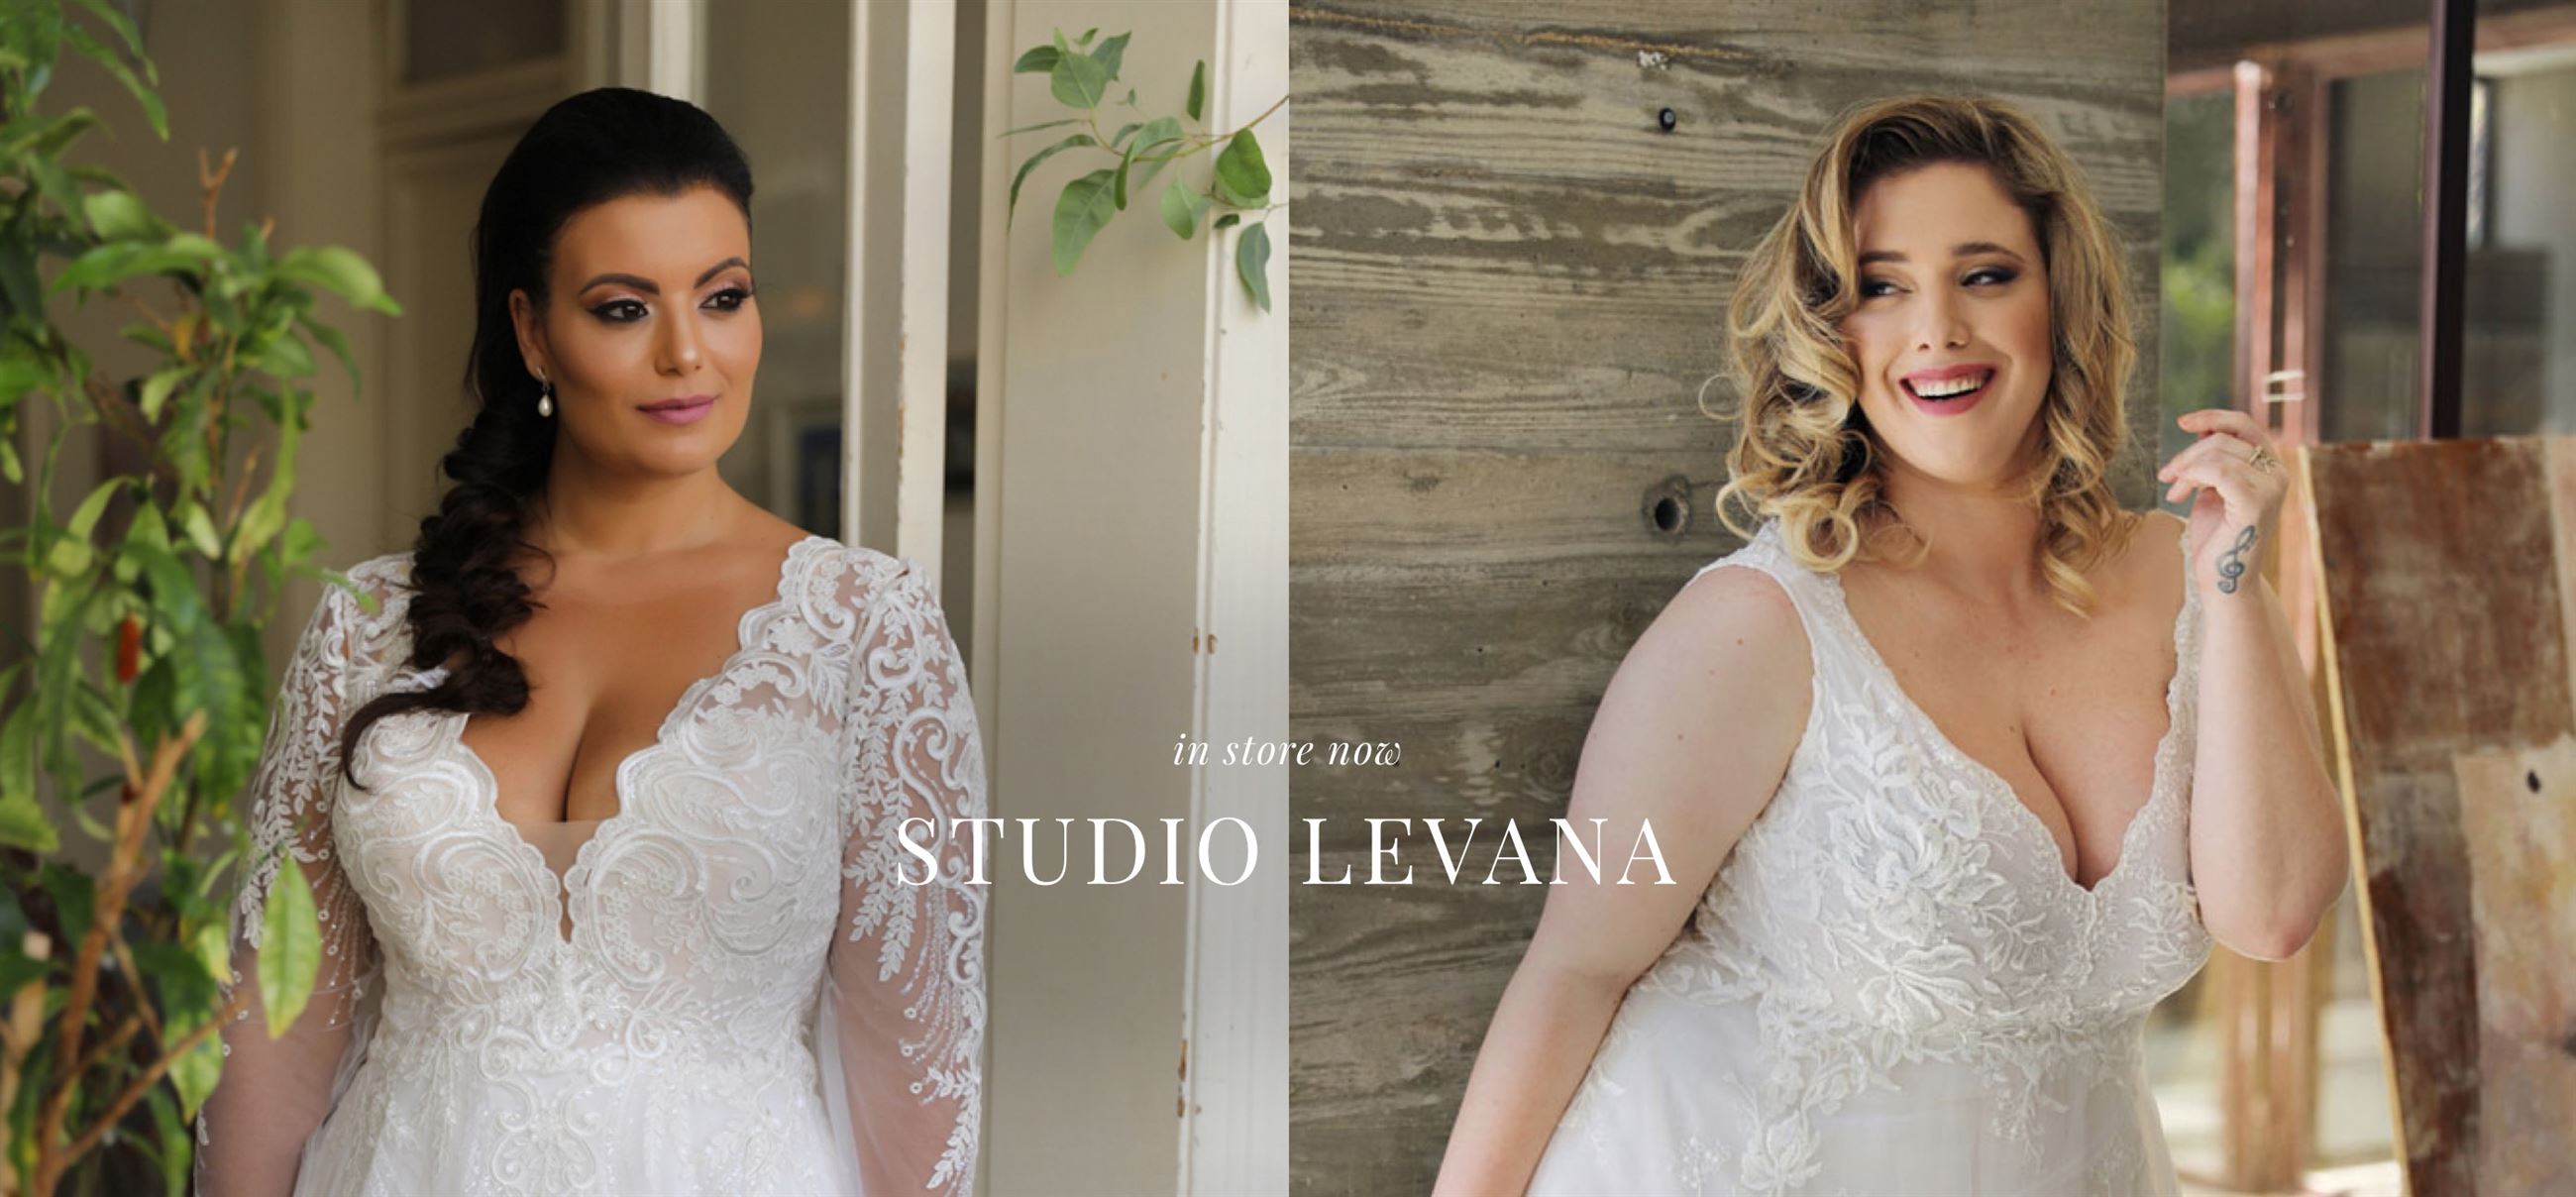 Studio Levana Wedding Dresses. Desktop Image.